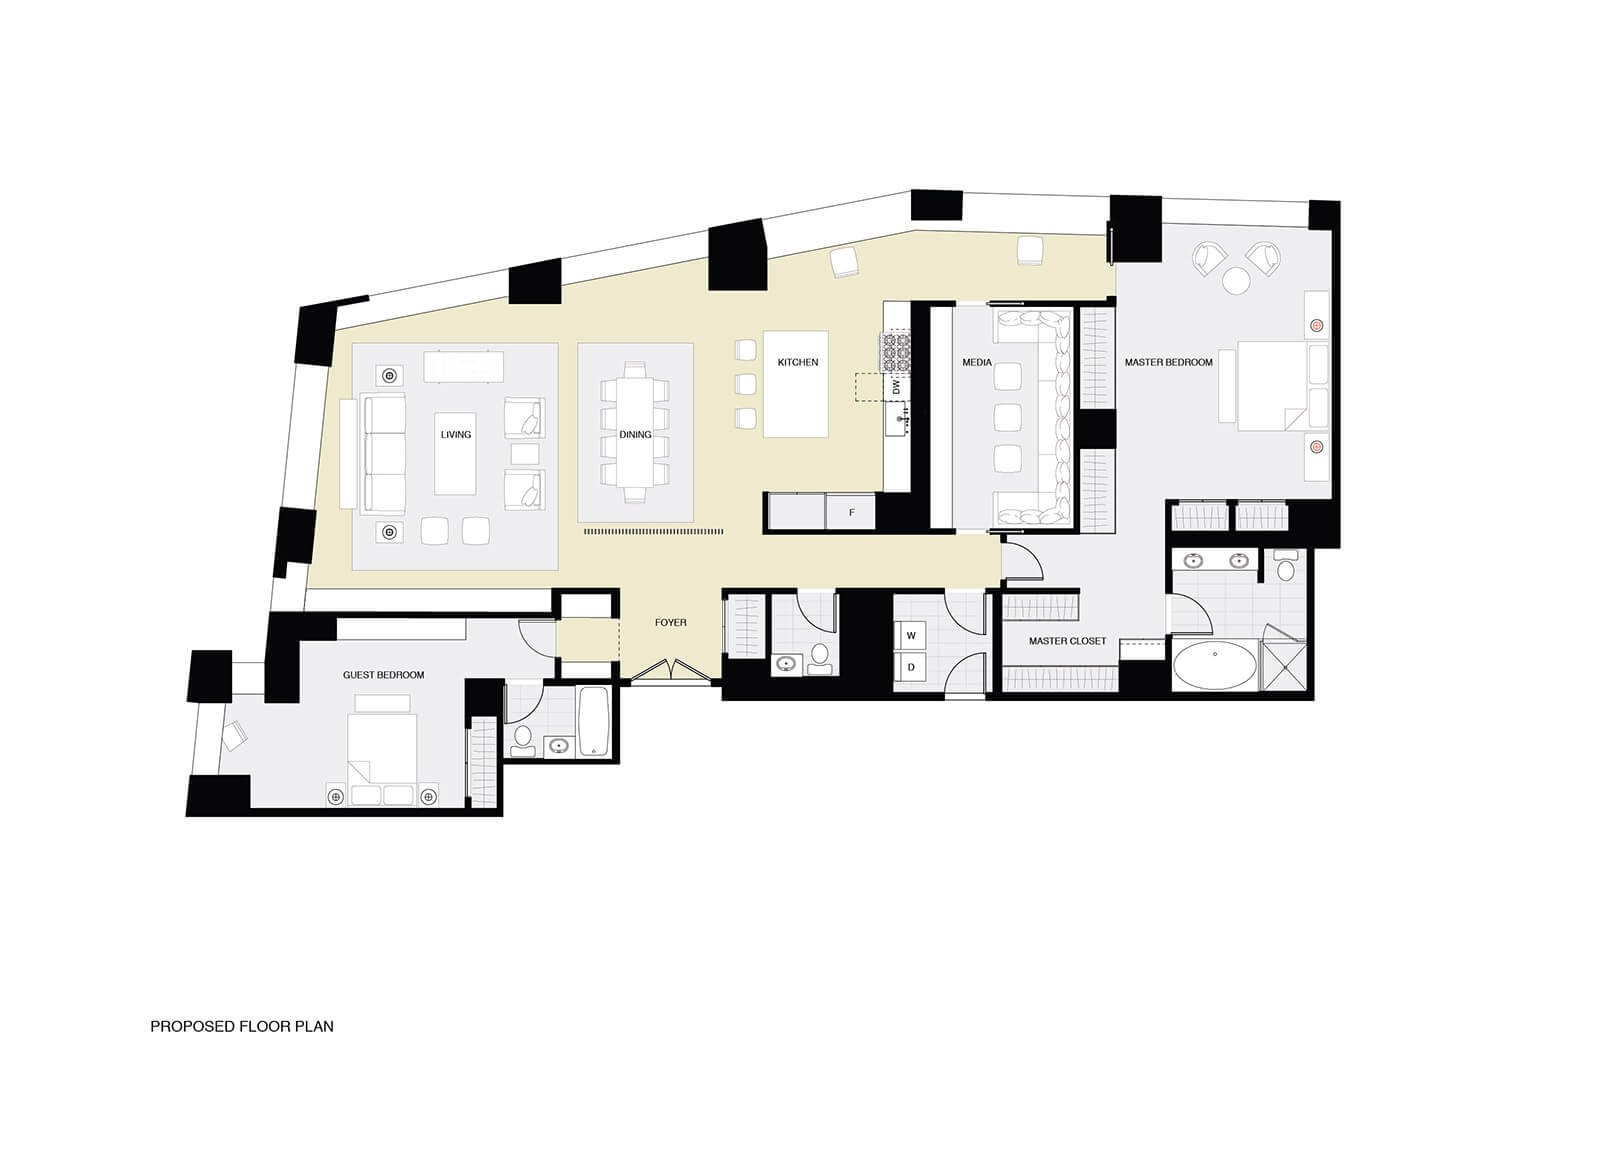 studio vara residential four seasons drawing floor plan 